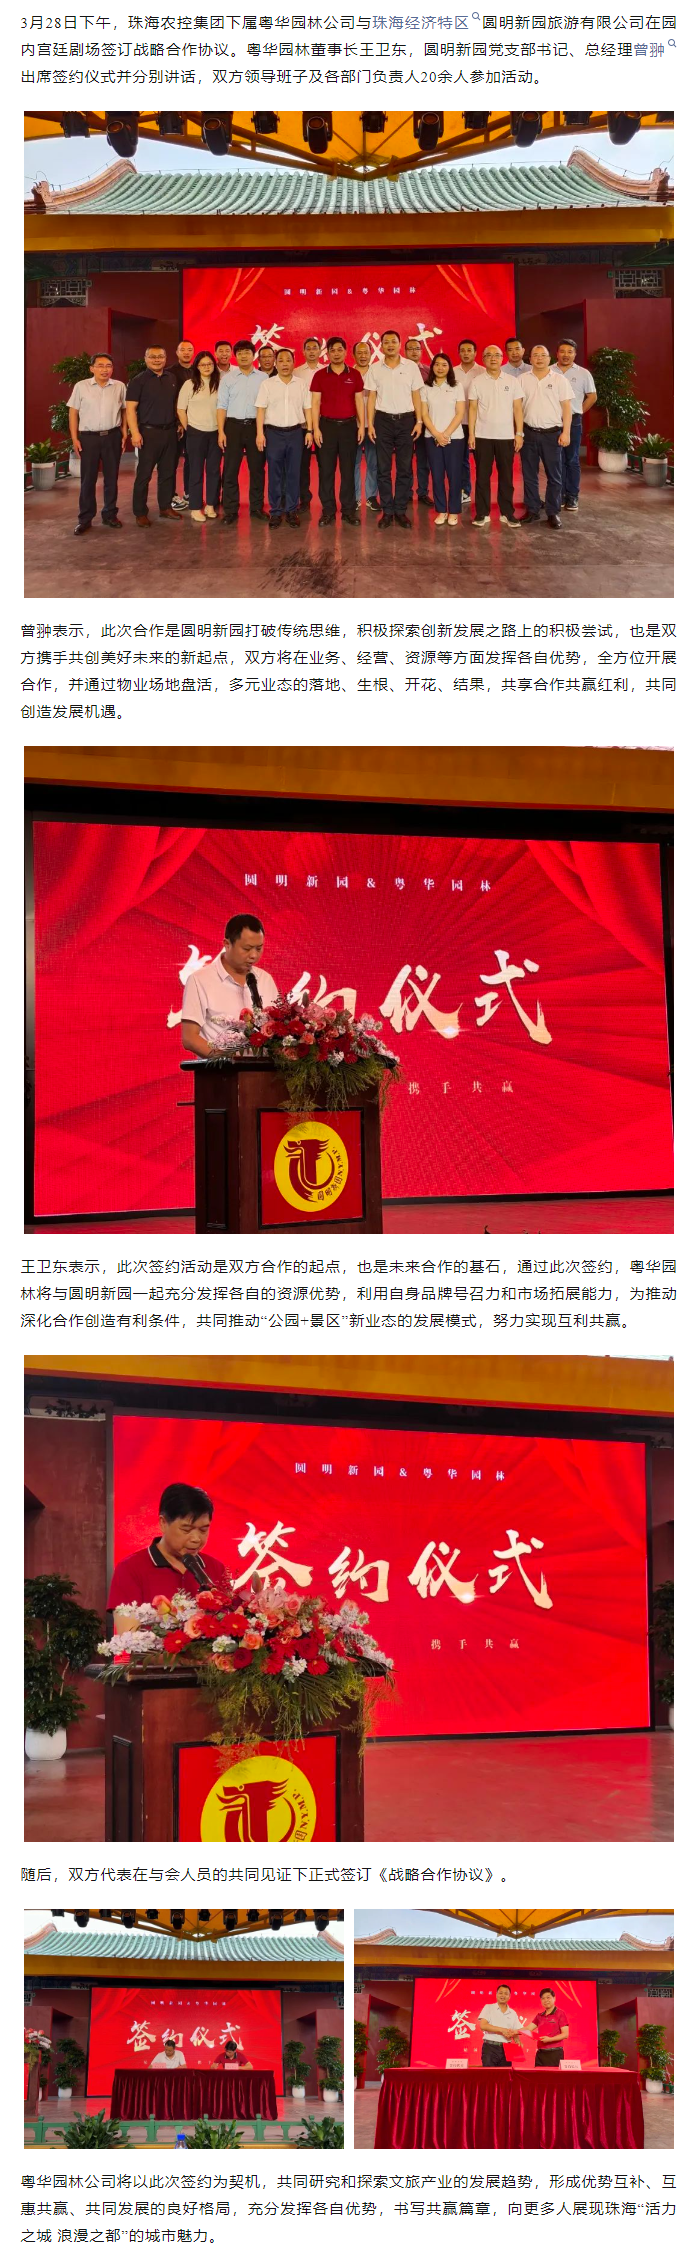 火狐体育平台（中国）管理有限公司集团下属粤华园林公司与圆明新园签订战略合作协议.png